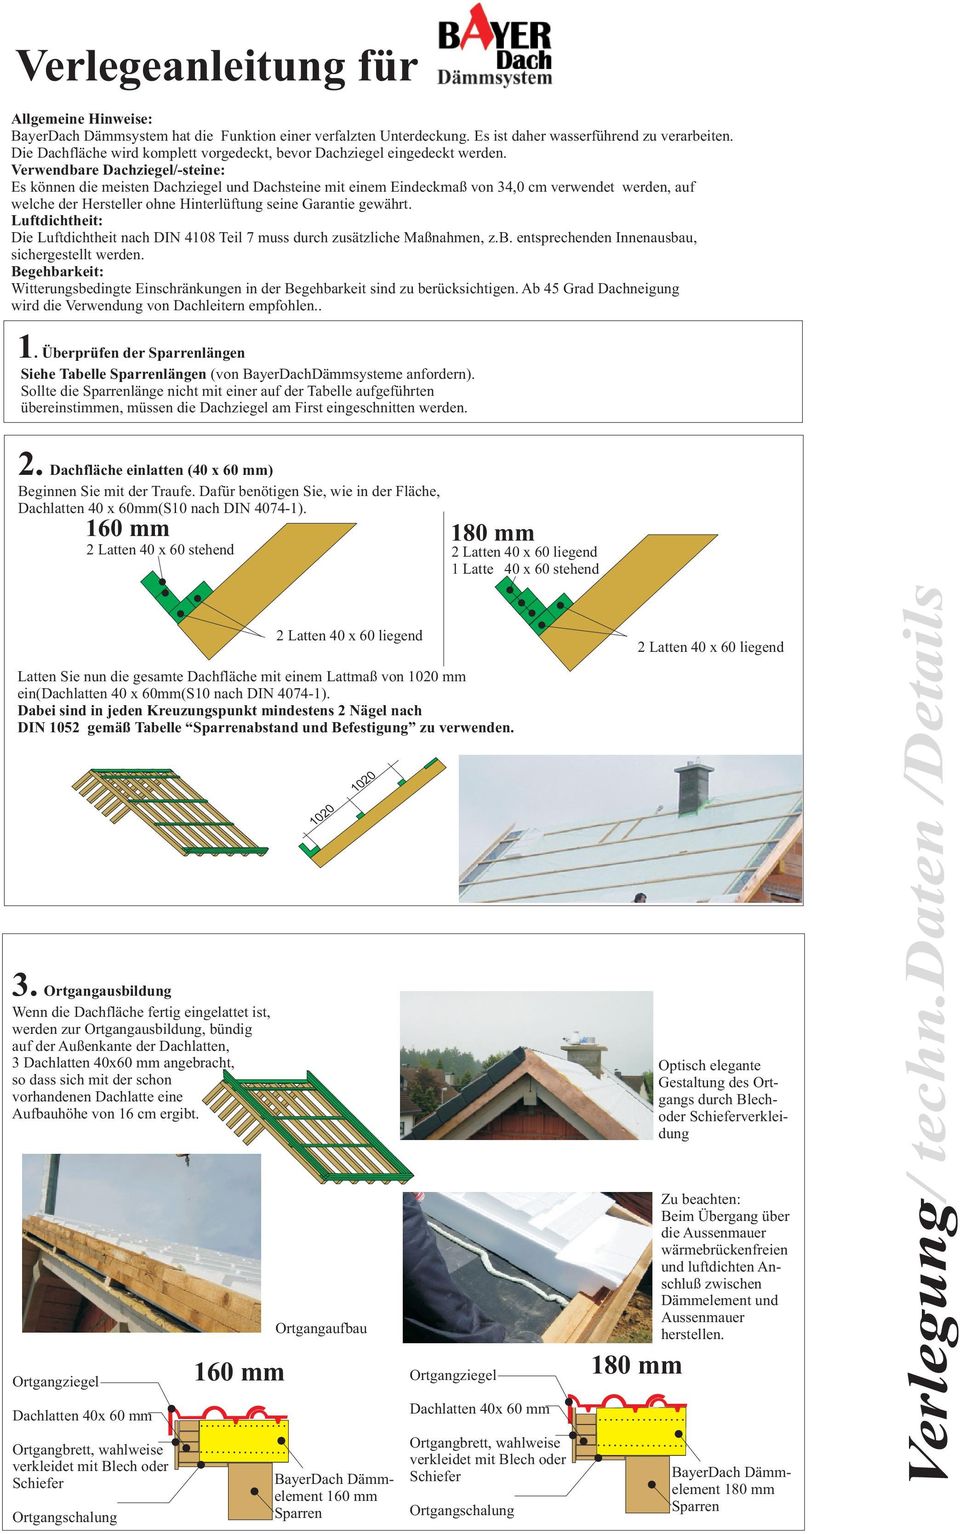 Verwendbare Dachziegel/-steine: Es können die meisten Dachziegel und Dachsteine mit einem Eindeckmaß von 34,0 cm verwendet werden, auf welche der Hersteller ohne Hinterlüftung seine Garantie gewährt.